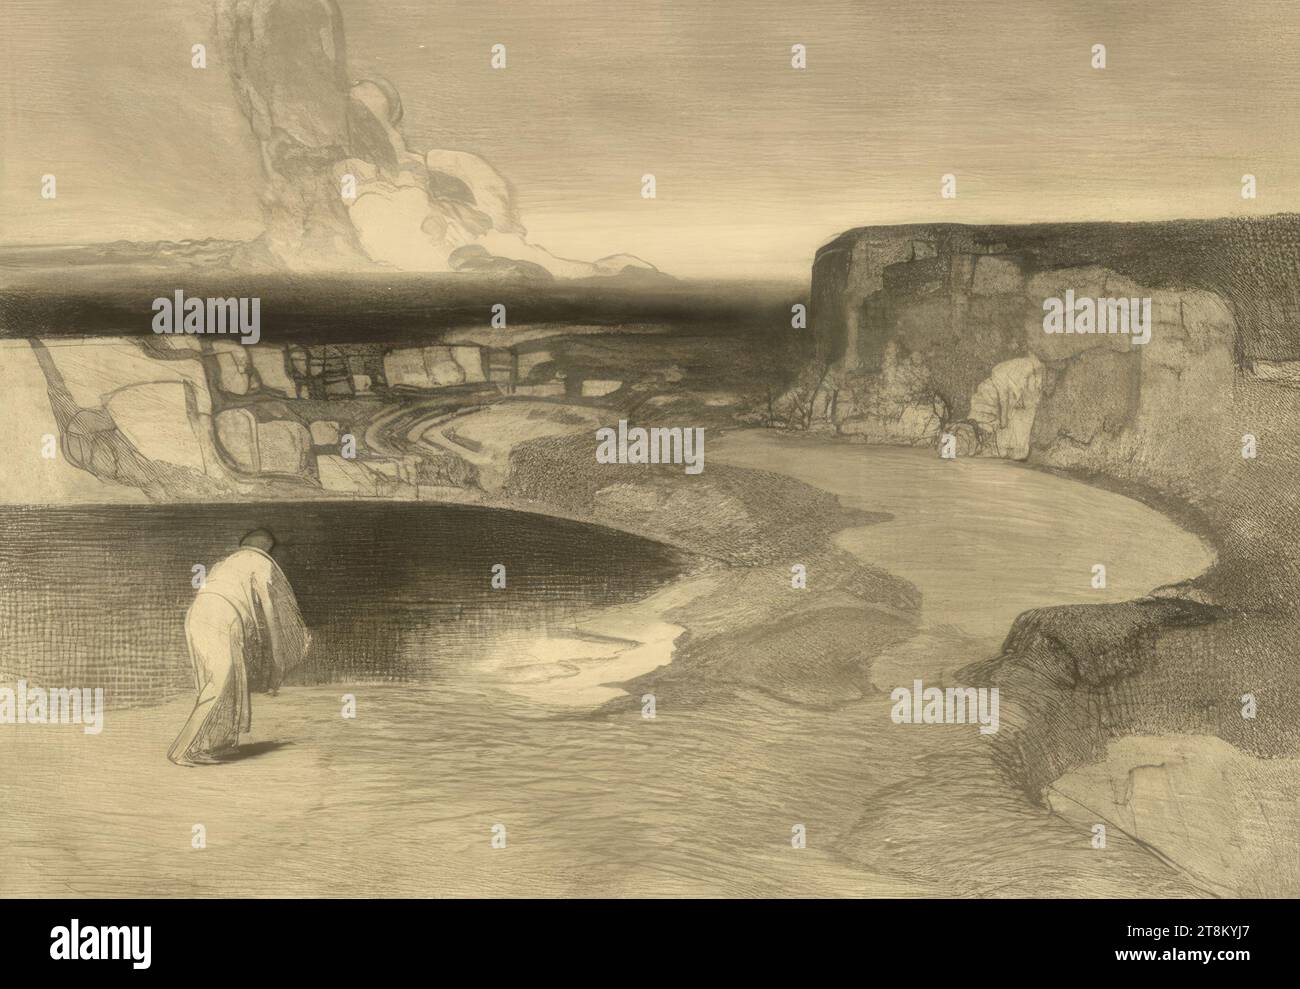 Paesaggio roccioso con lago, Rudolf Jettmar, Zawodzie vicino Tarnow, Galizia, 1869 - 1939 Vienna, 1902, stampa, incisione, targa: 27,7 x 39,8 cm, nel piatto M.U. firma: 'CON KAIS. SUSSIDI REDATTI, Austria Foto Stock